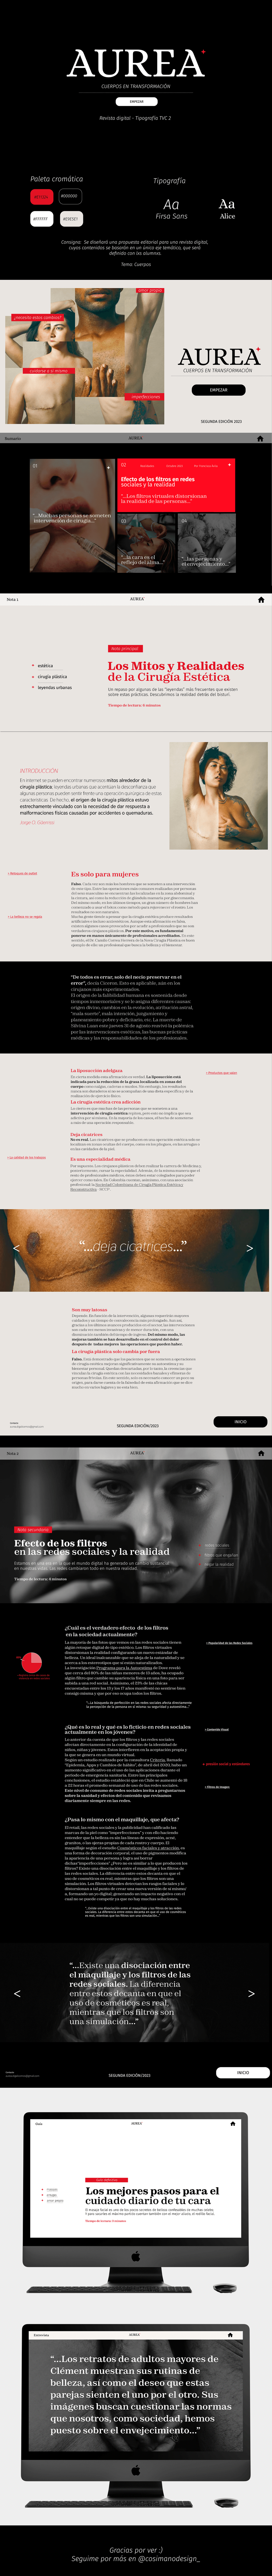 diseño revista revista digital Web pagina web Figma diseñografico cuerpos Fotografia